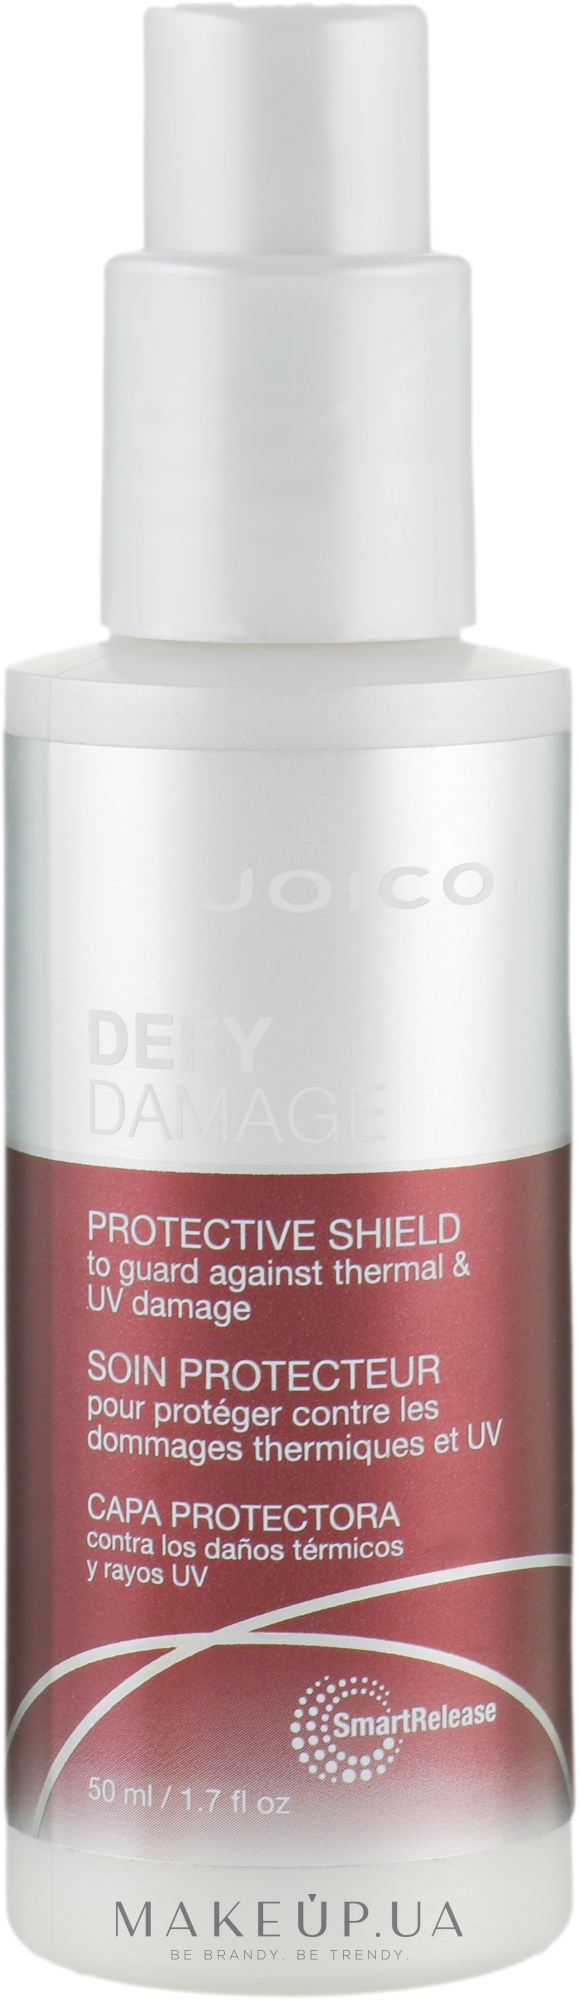 Крем УФ-фільтр для захисту від термічних пошкоджень - Joico Defy Damage — фото 50ml